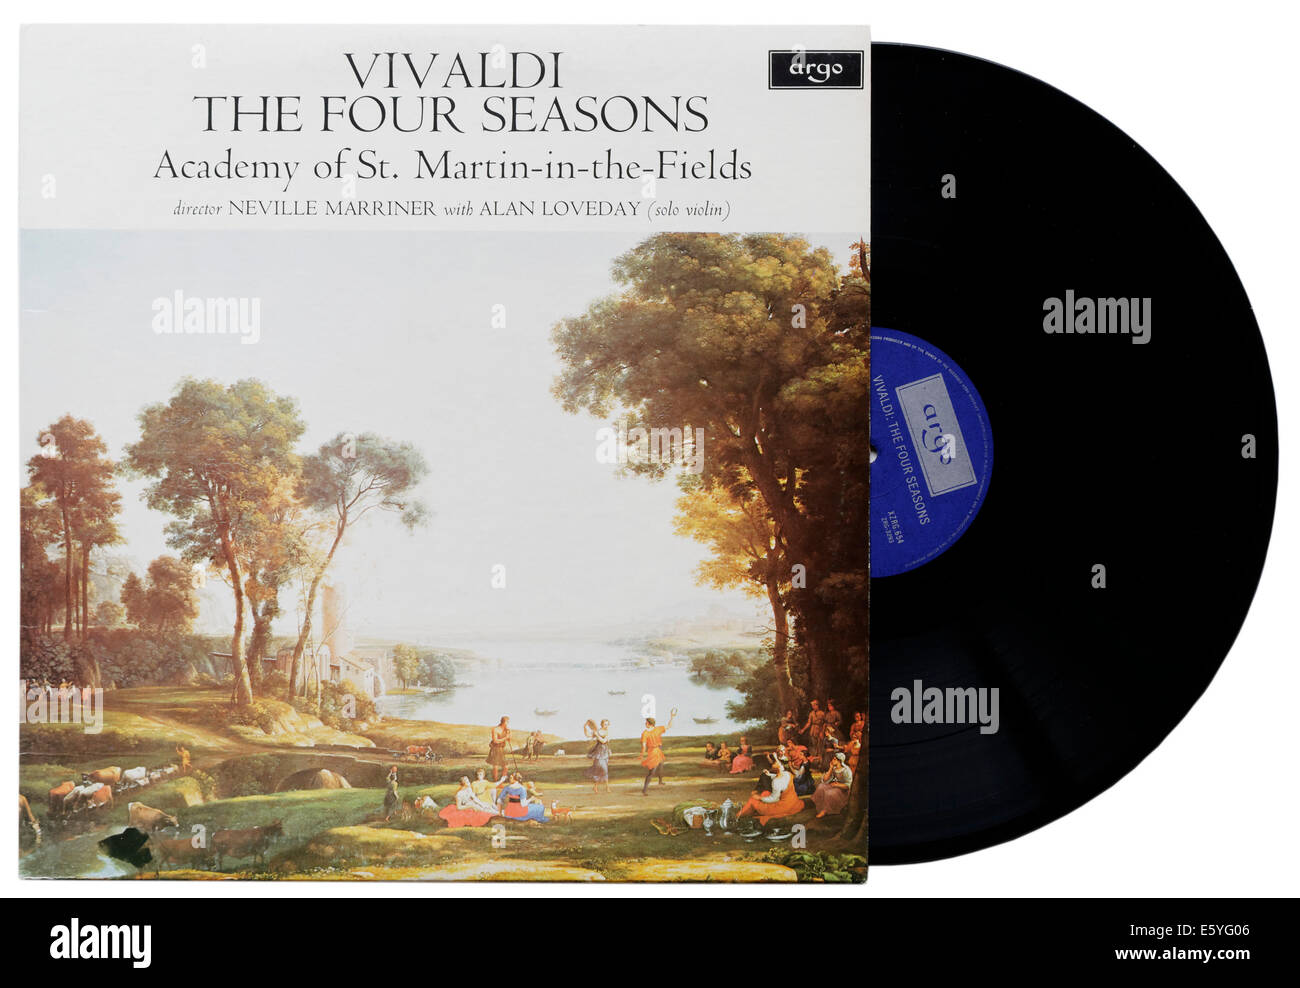 Quattro stagioni Vivaldi su vinile, Sir Neville Marriner conducendo l'Accademia di San Martin nei campi Foto Stock